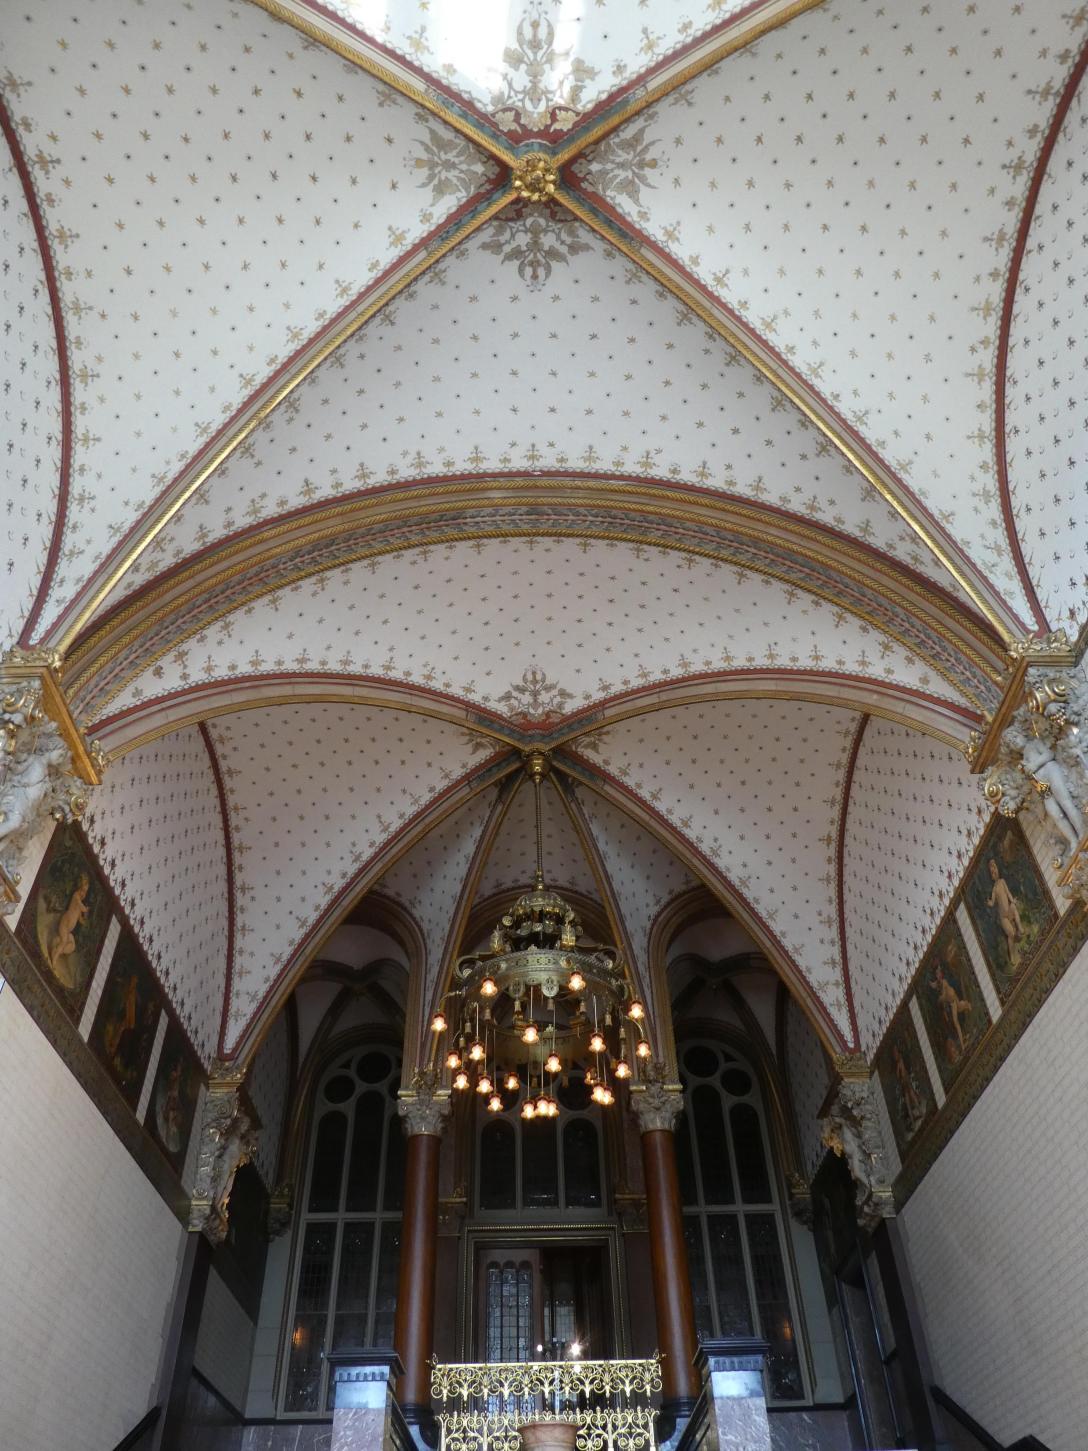 Amsterdam Centraal Koninklijk paviljoen trappenhuis met kapitelen